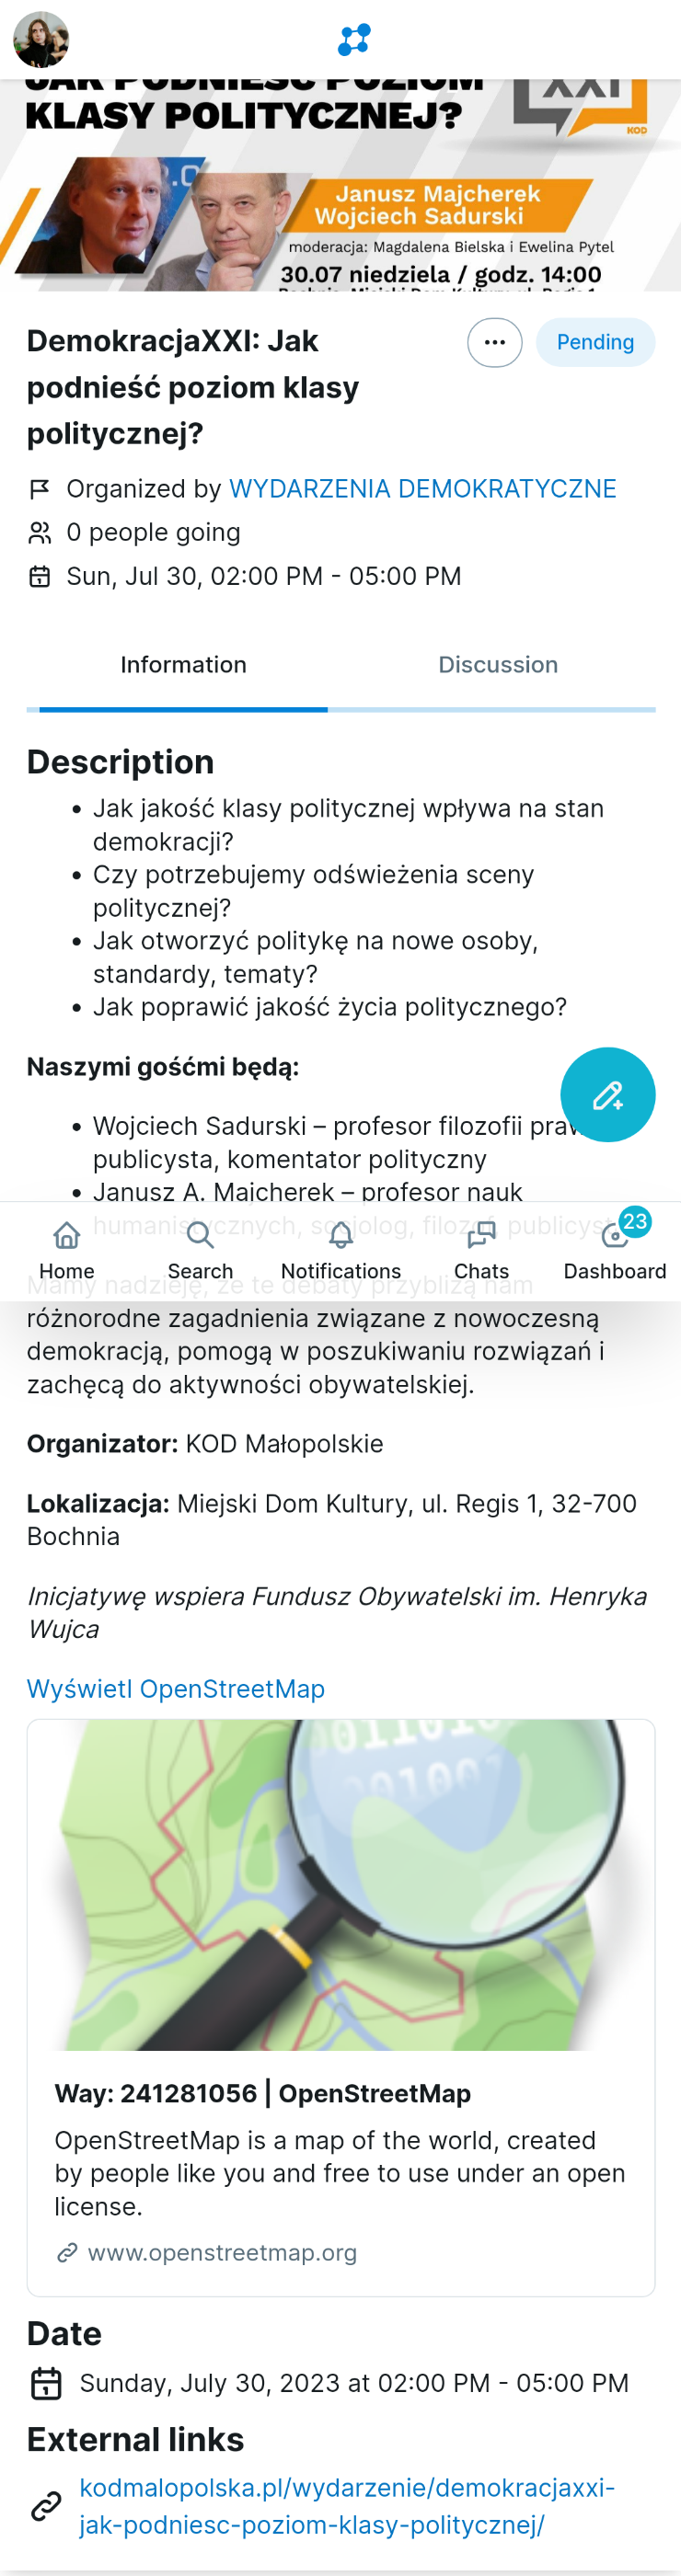 Zrzut ekranu wydarzenia KOD-u z Mobilizona w interfejsie Soapbox.

Tytuł wydarzenia to „DemokracjaXXI: Jak podnieść poziom klasy politycznej?”